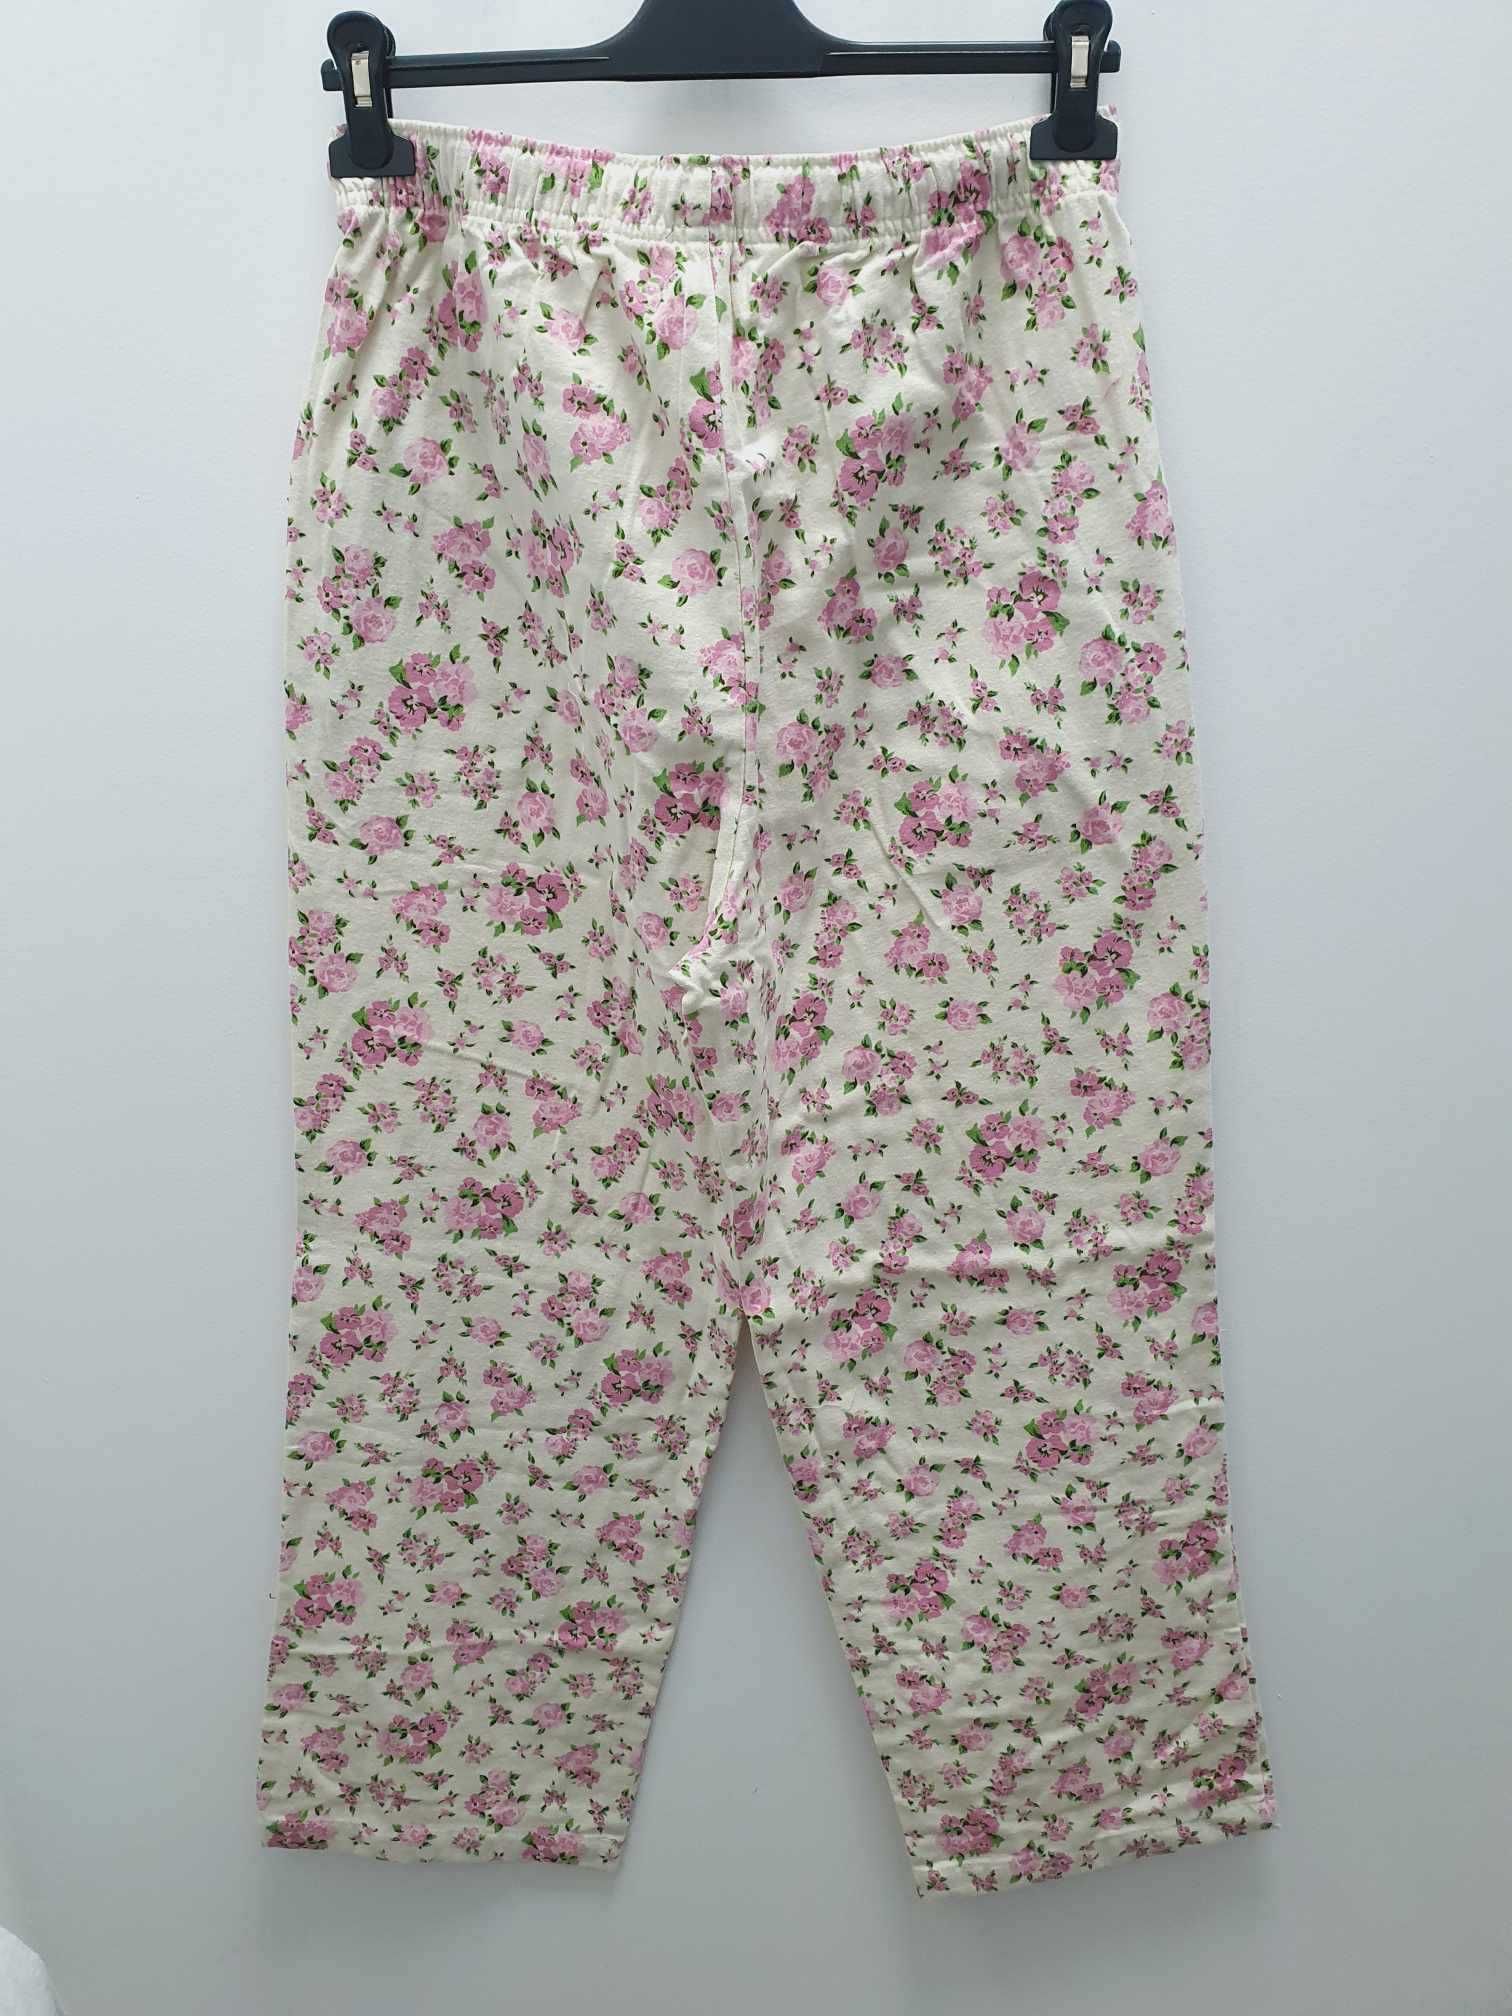 Damska piżama komplet na długo szara w kwiaty roz. M